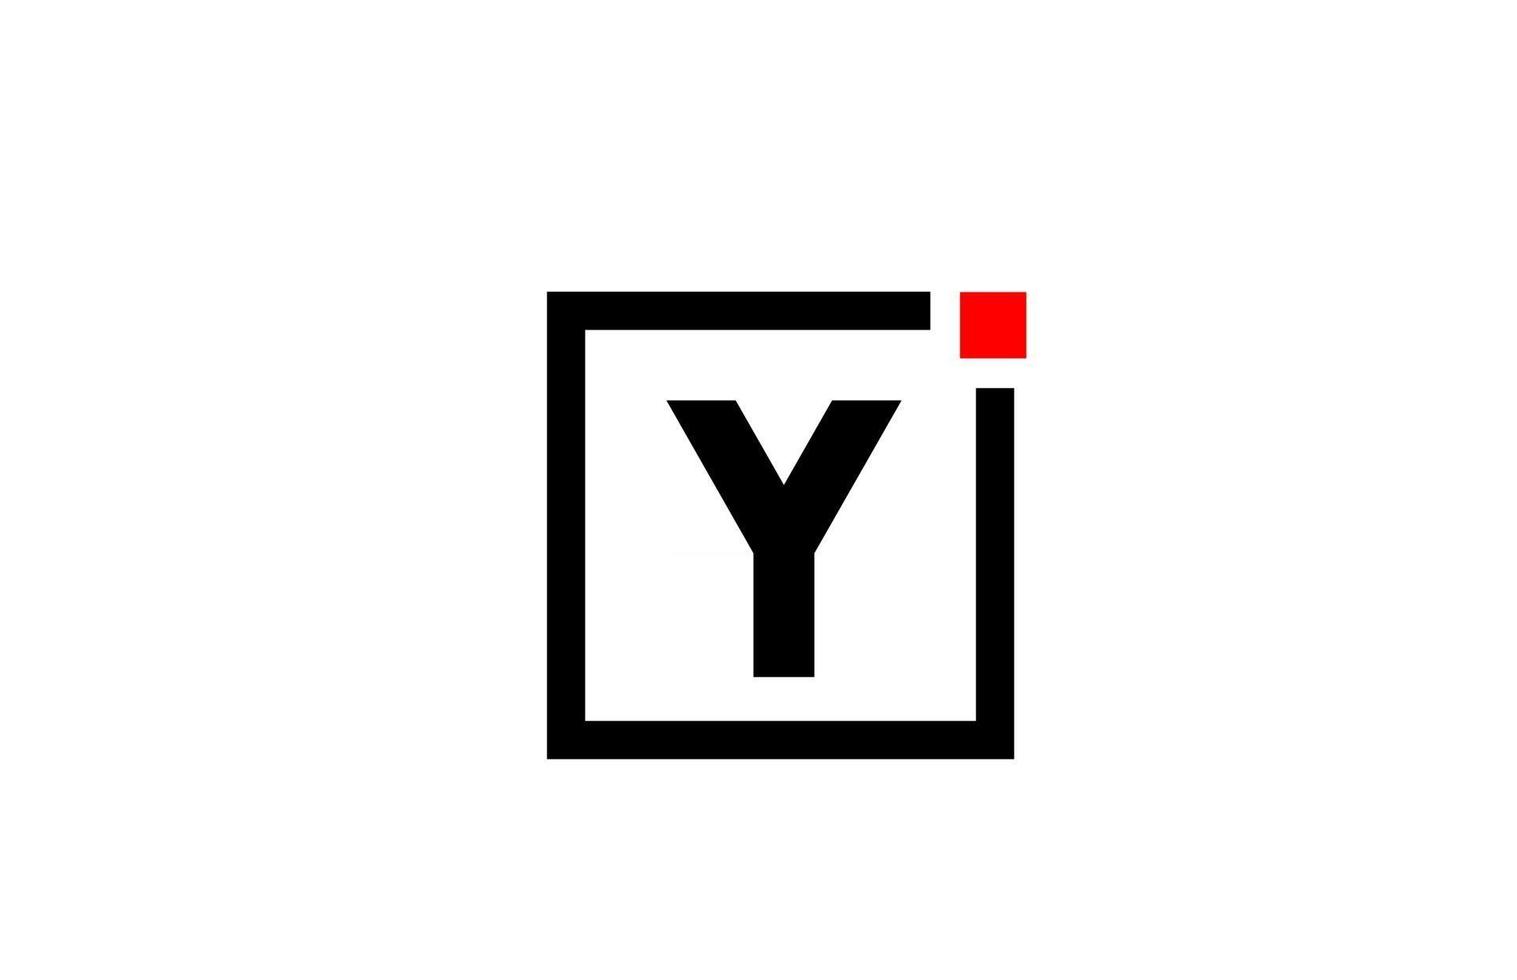 Y alfabeto letra logo icono en blanco y negro. diseño de empresa y negocio con punto cuadrado y rojo. plantilla de identidad corporativa creativa vector